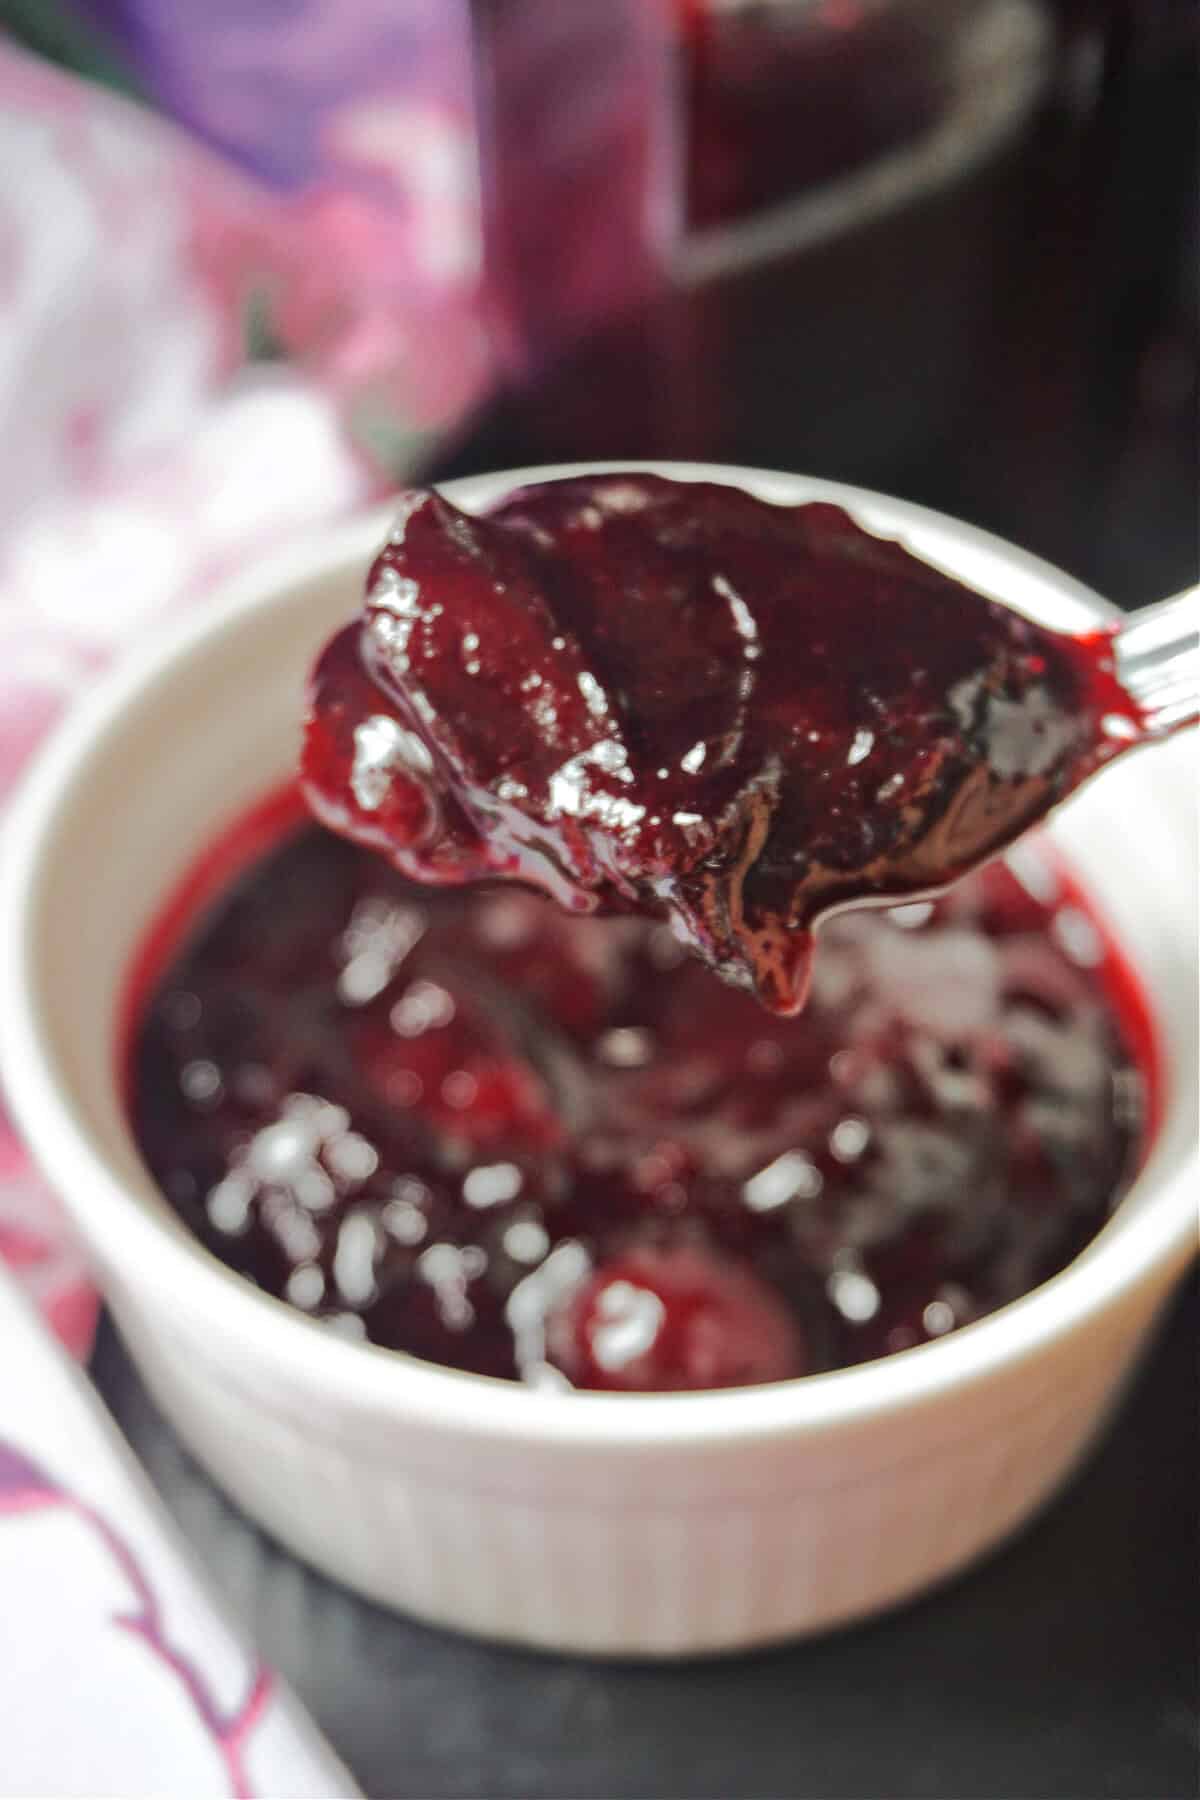 A teaspoon of damson jam over a ramekin of more jam.